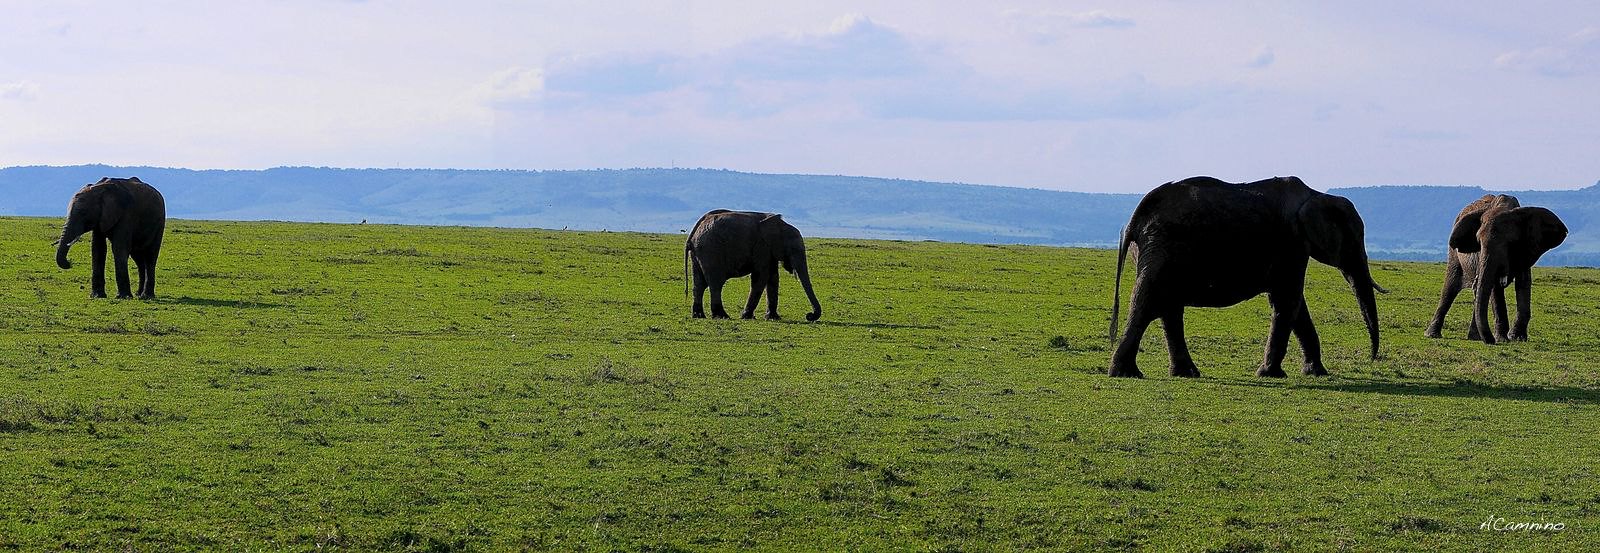 El parto de una gacela en un Masai Mara, lleno de búfalos, leones, guepardos... - 12 días de Safari en Kenia: Jambo bwana (40)